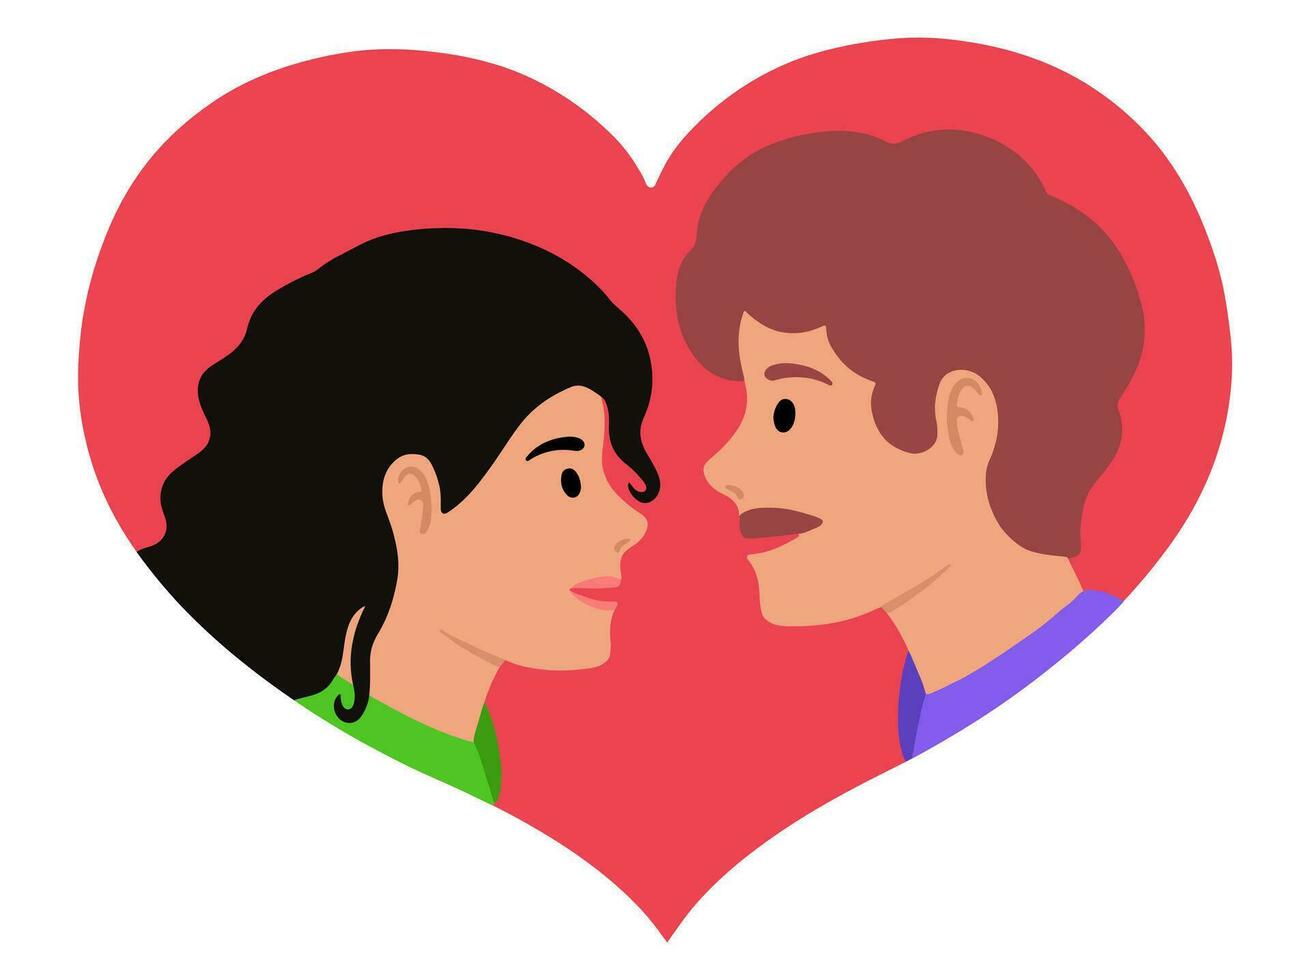 avatar personnage romantique couple illustration vecteur